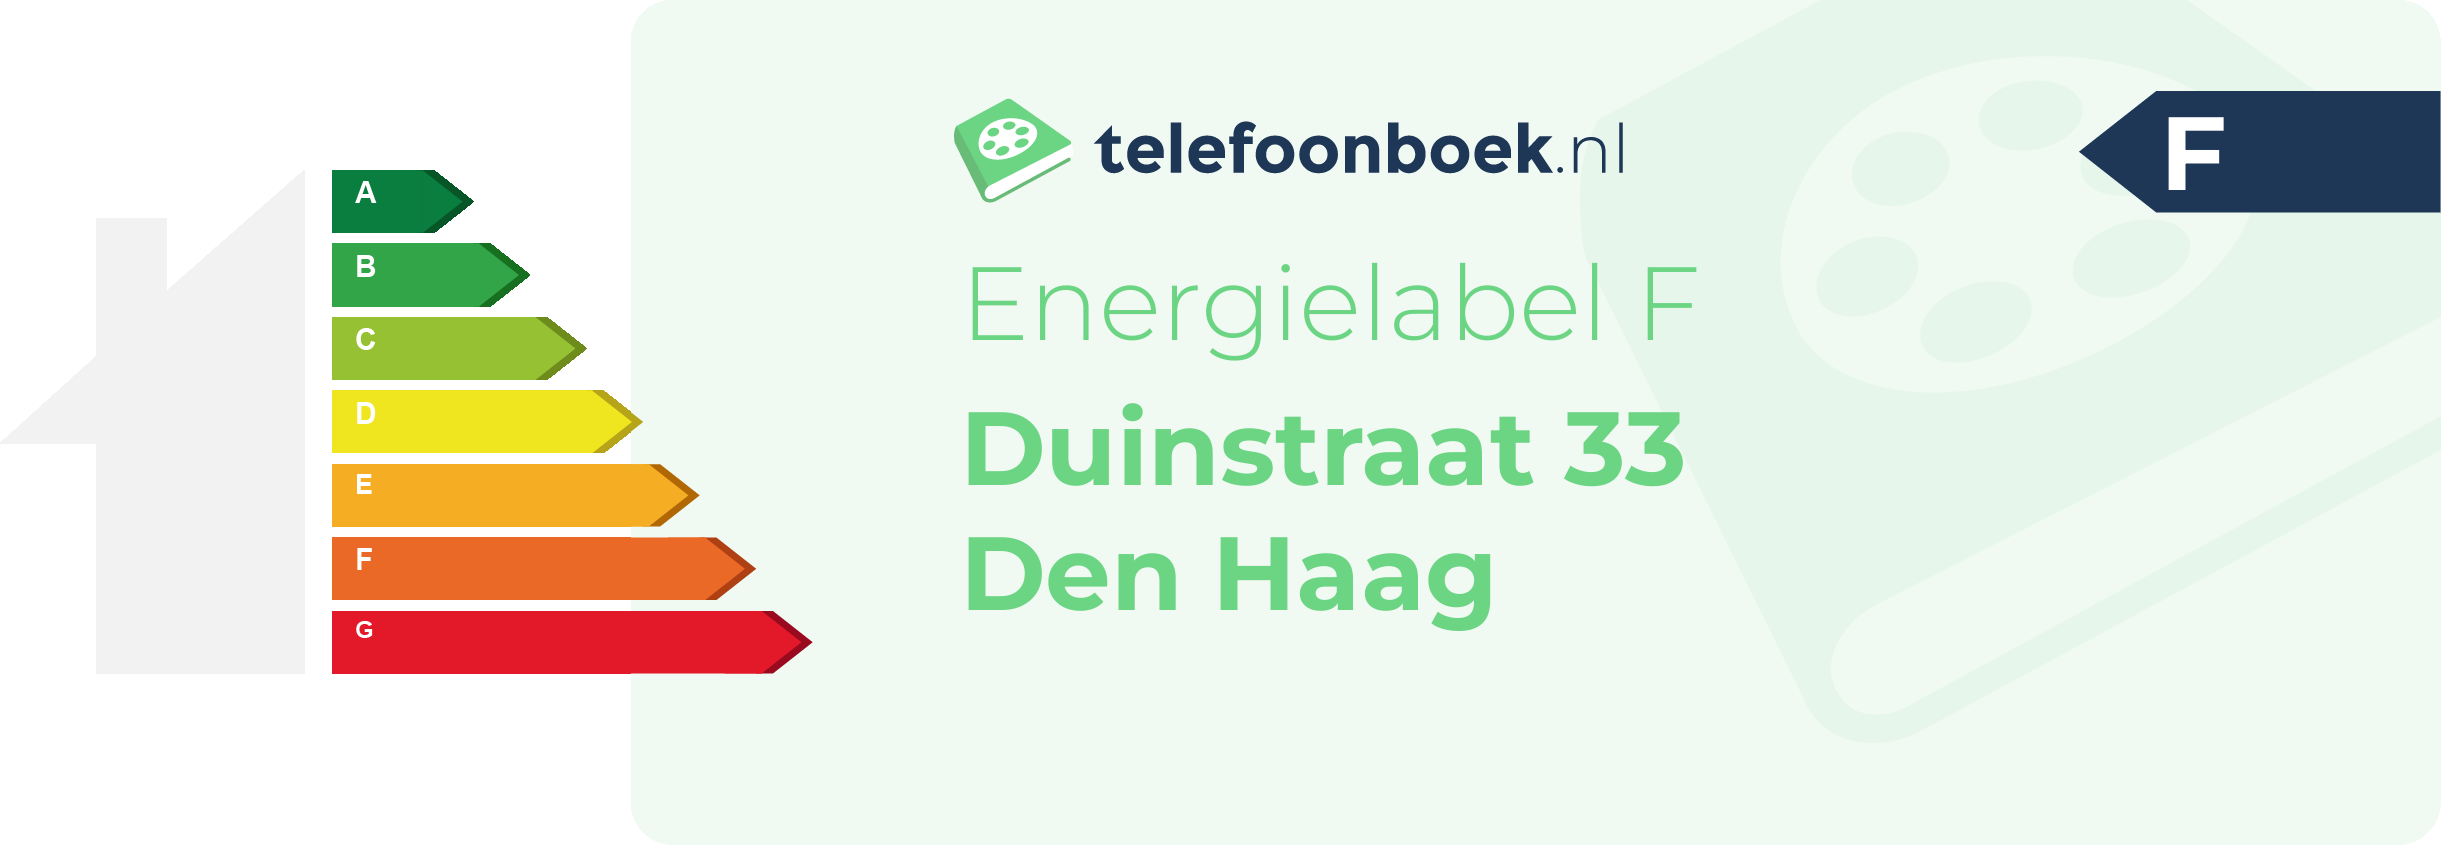 Energielabel Duinstraat 33 Den Haag